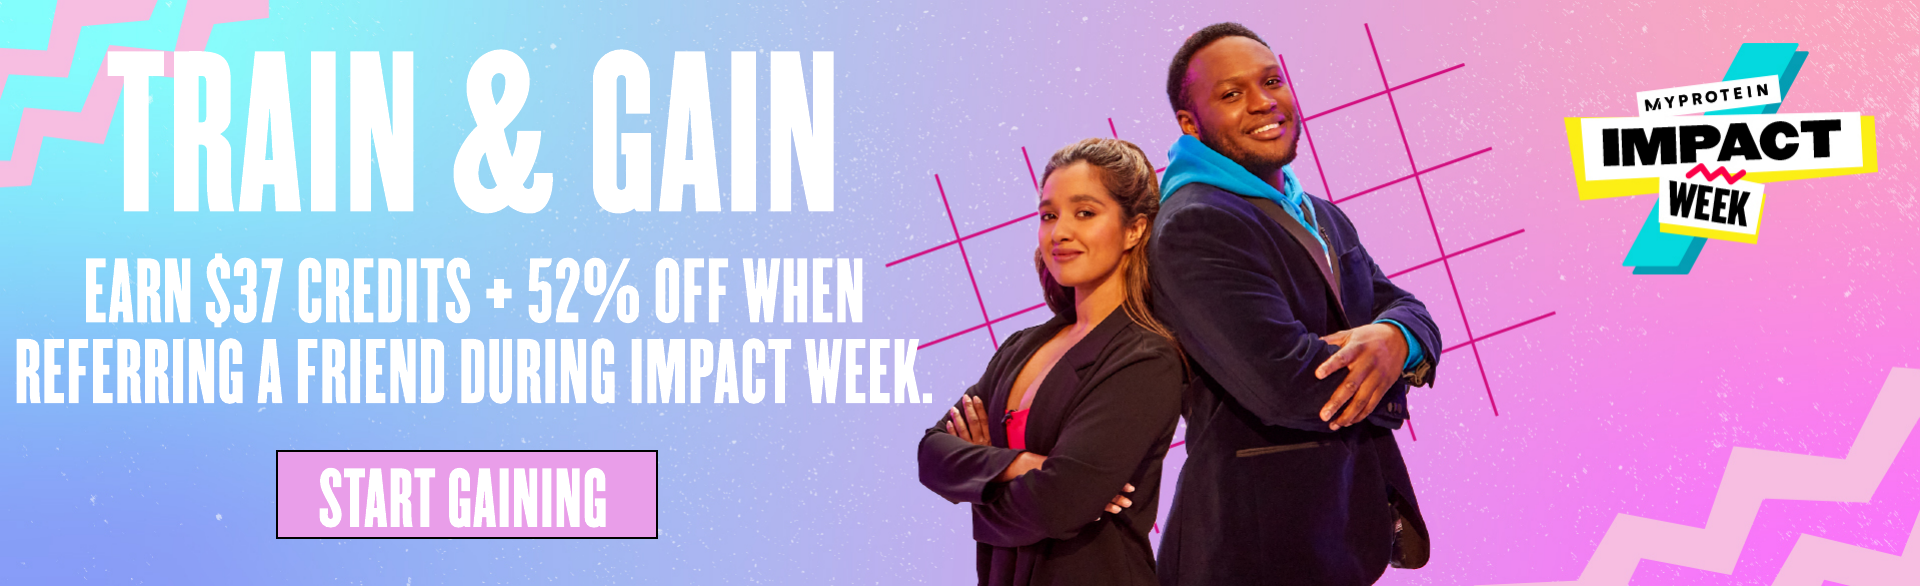 Impact Week Train & Gain